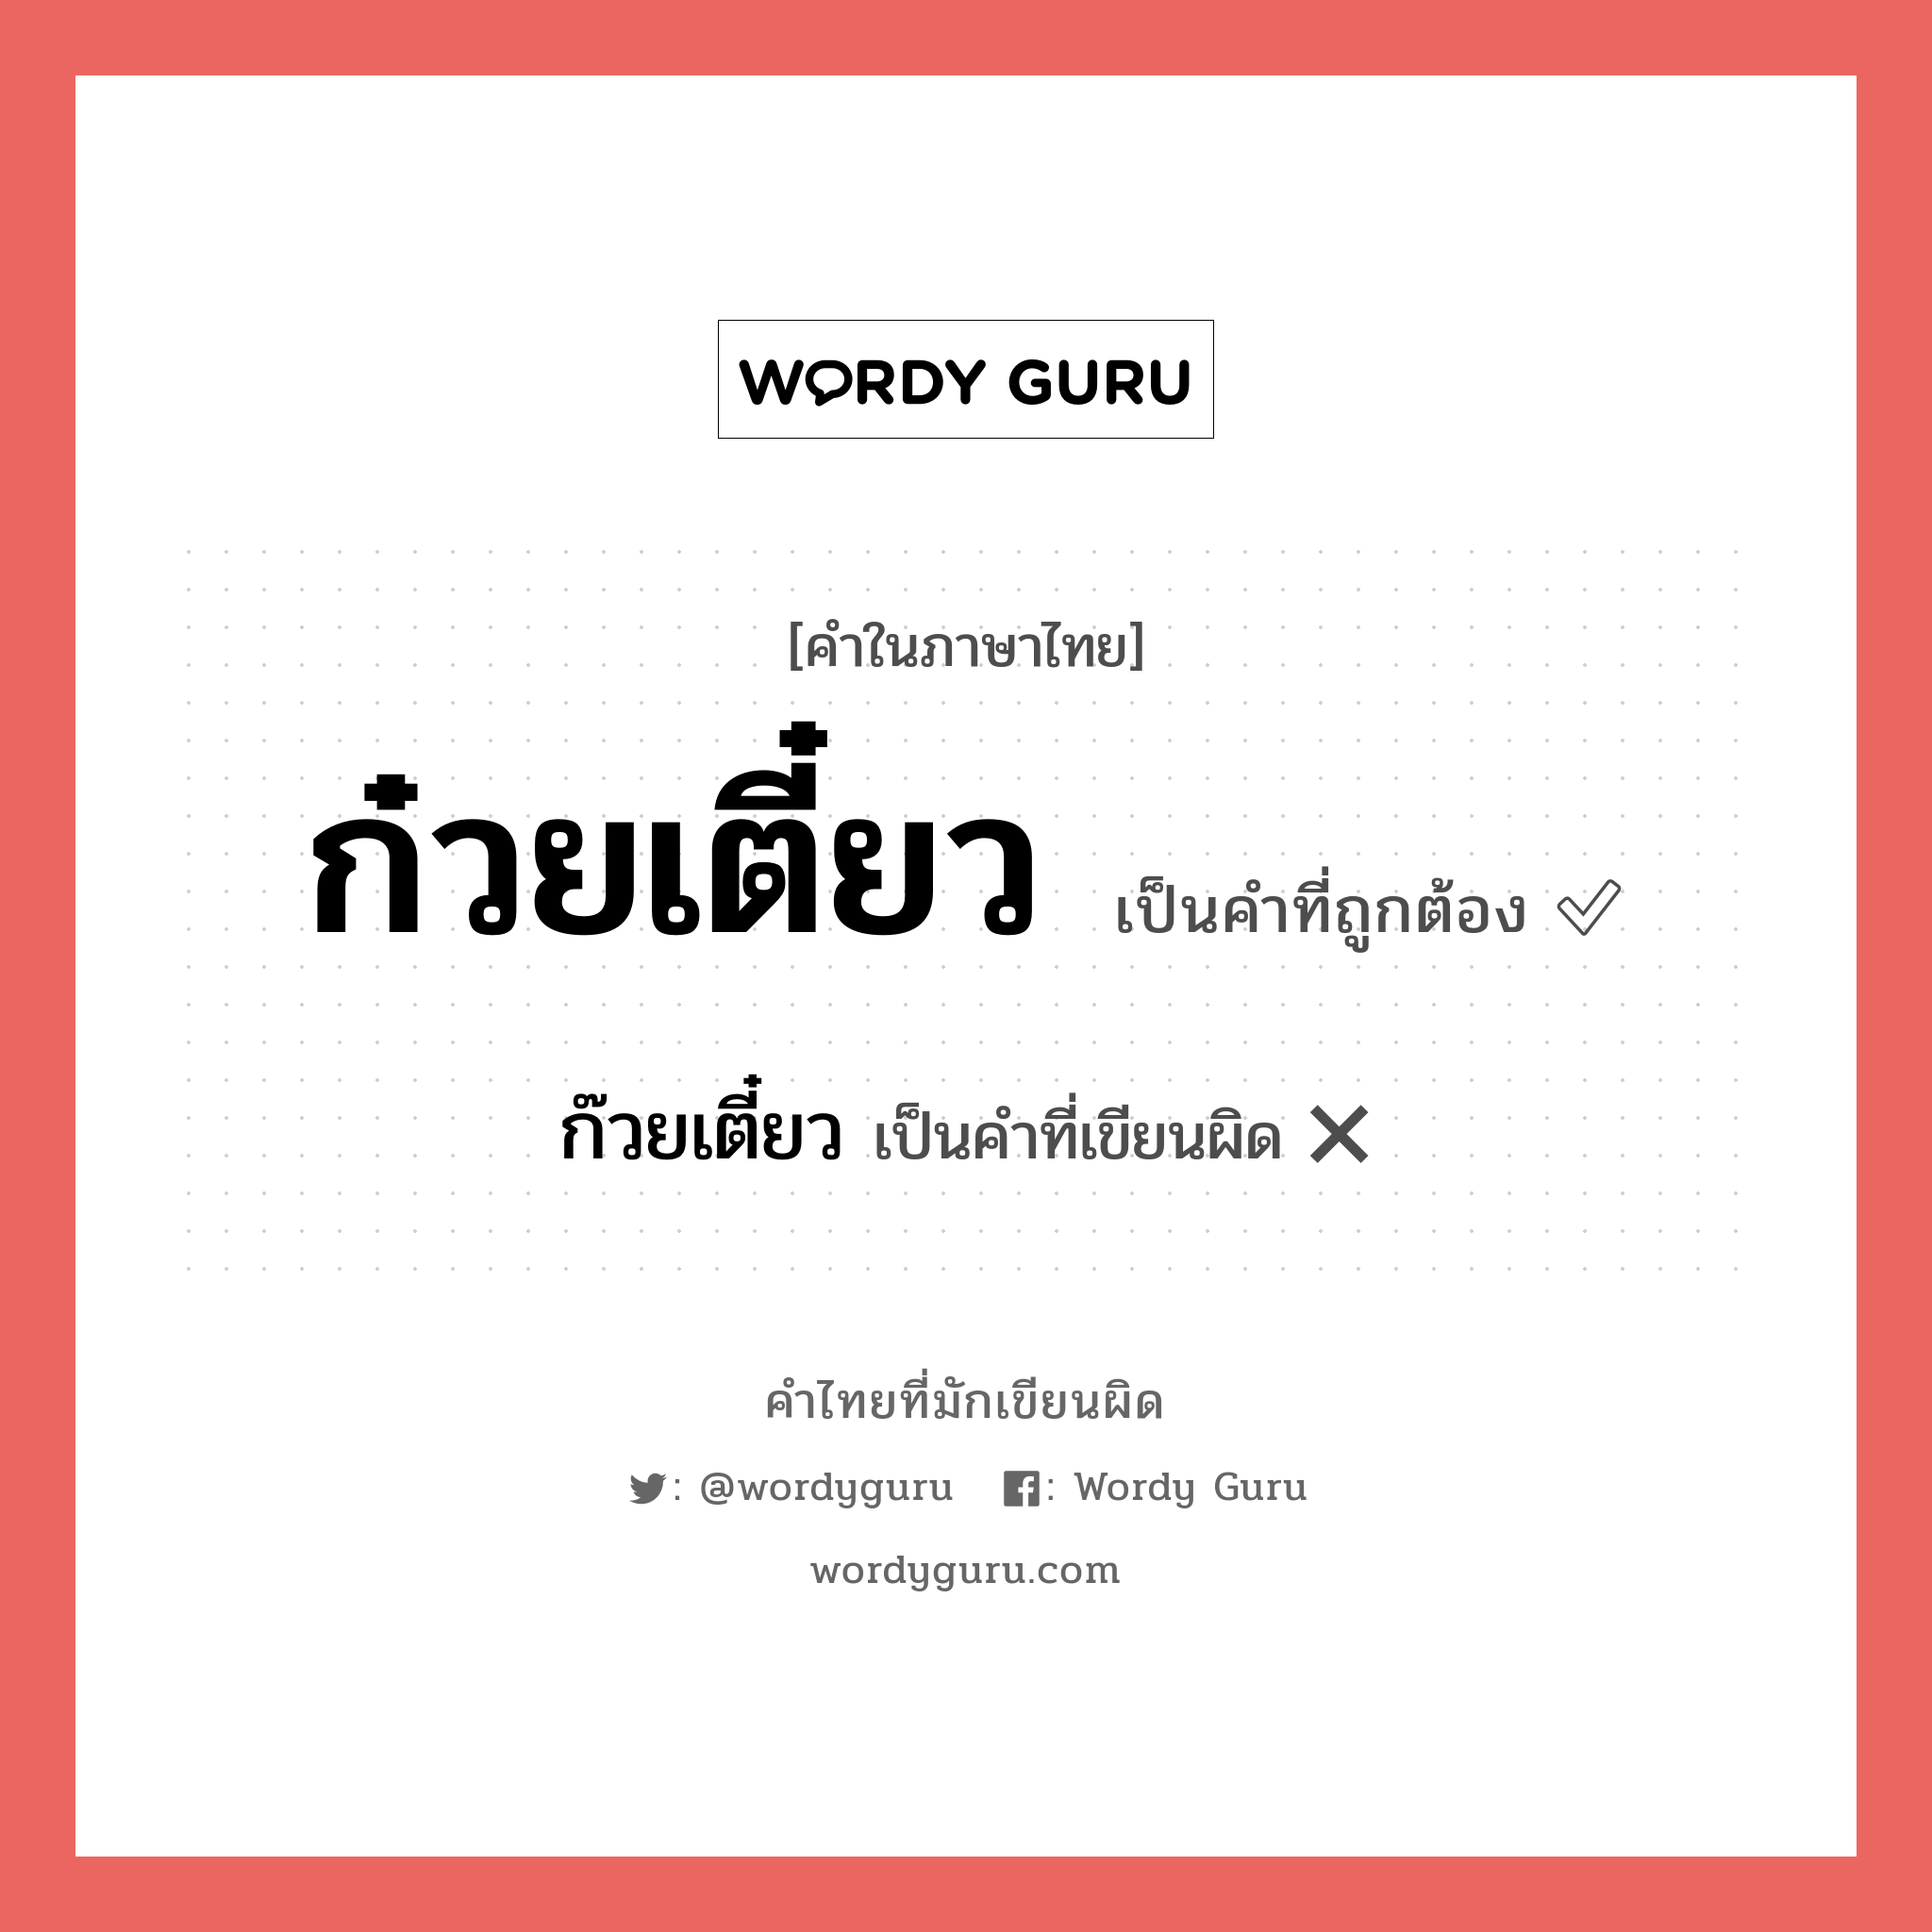 ก๊วยเตี๋ยว หรือ ก๋วยเตี๋ยว คำไหนเขียนถูก?, คำในภาษาไทยที่มักเขียนผิด ก๊วยเตี๋ยว คำที่ผิด ❌ ก๋วยเตี๋ยว